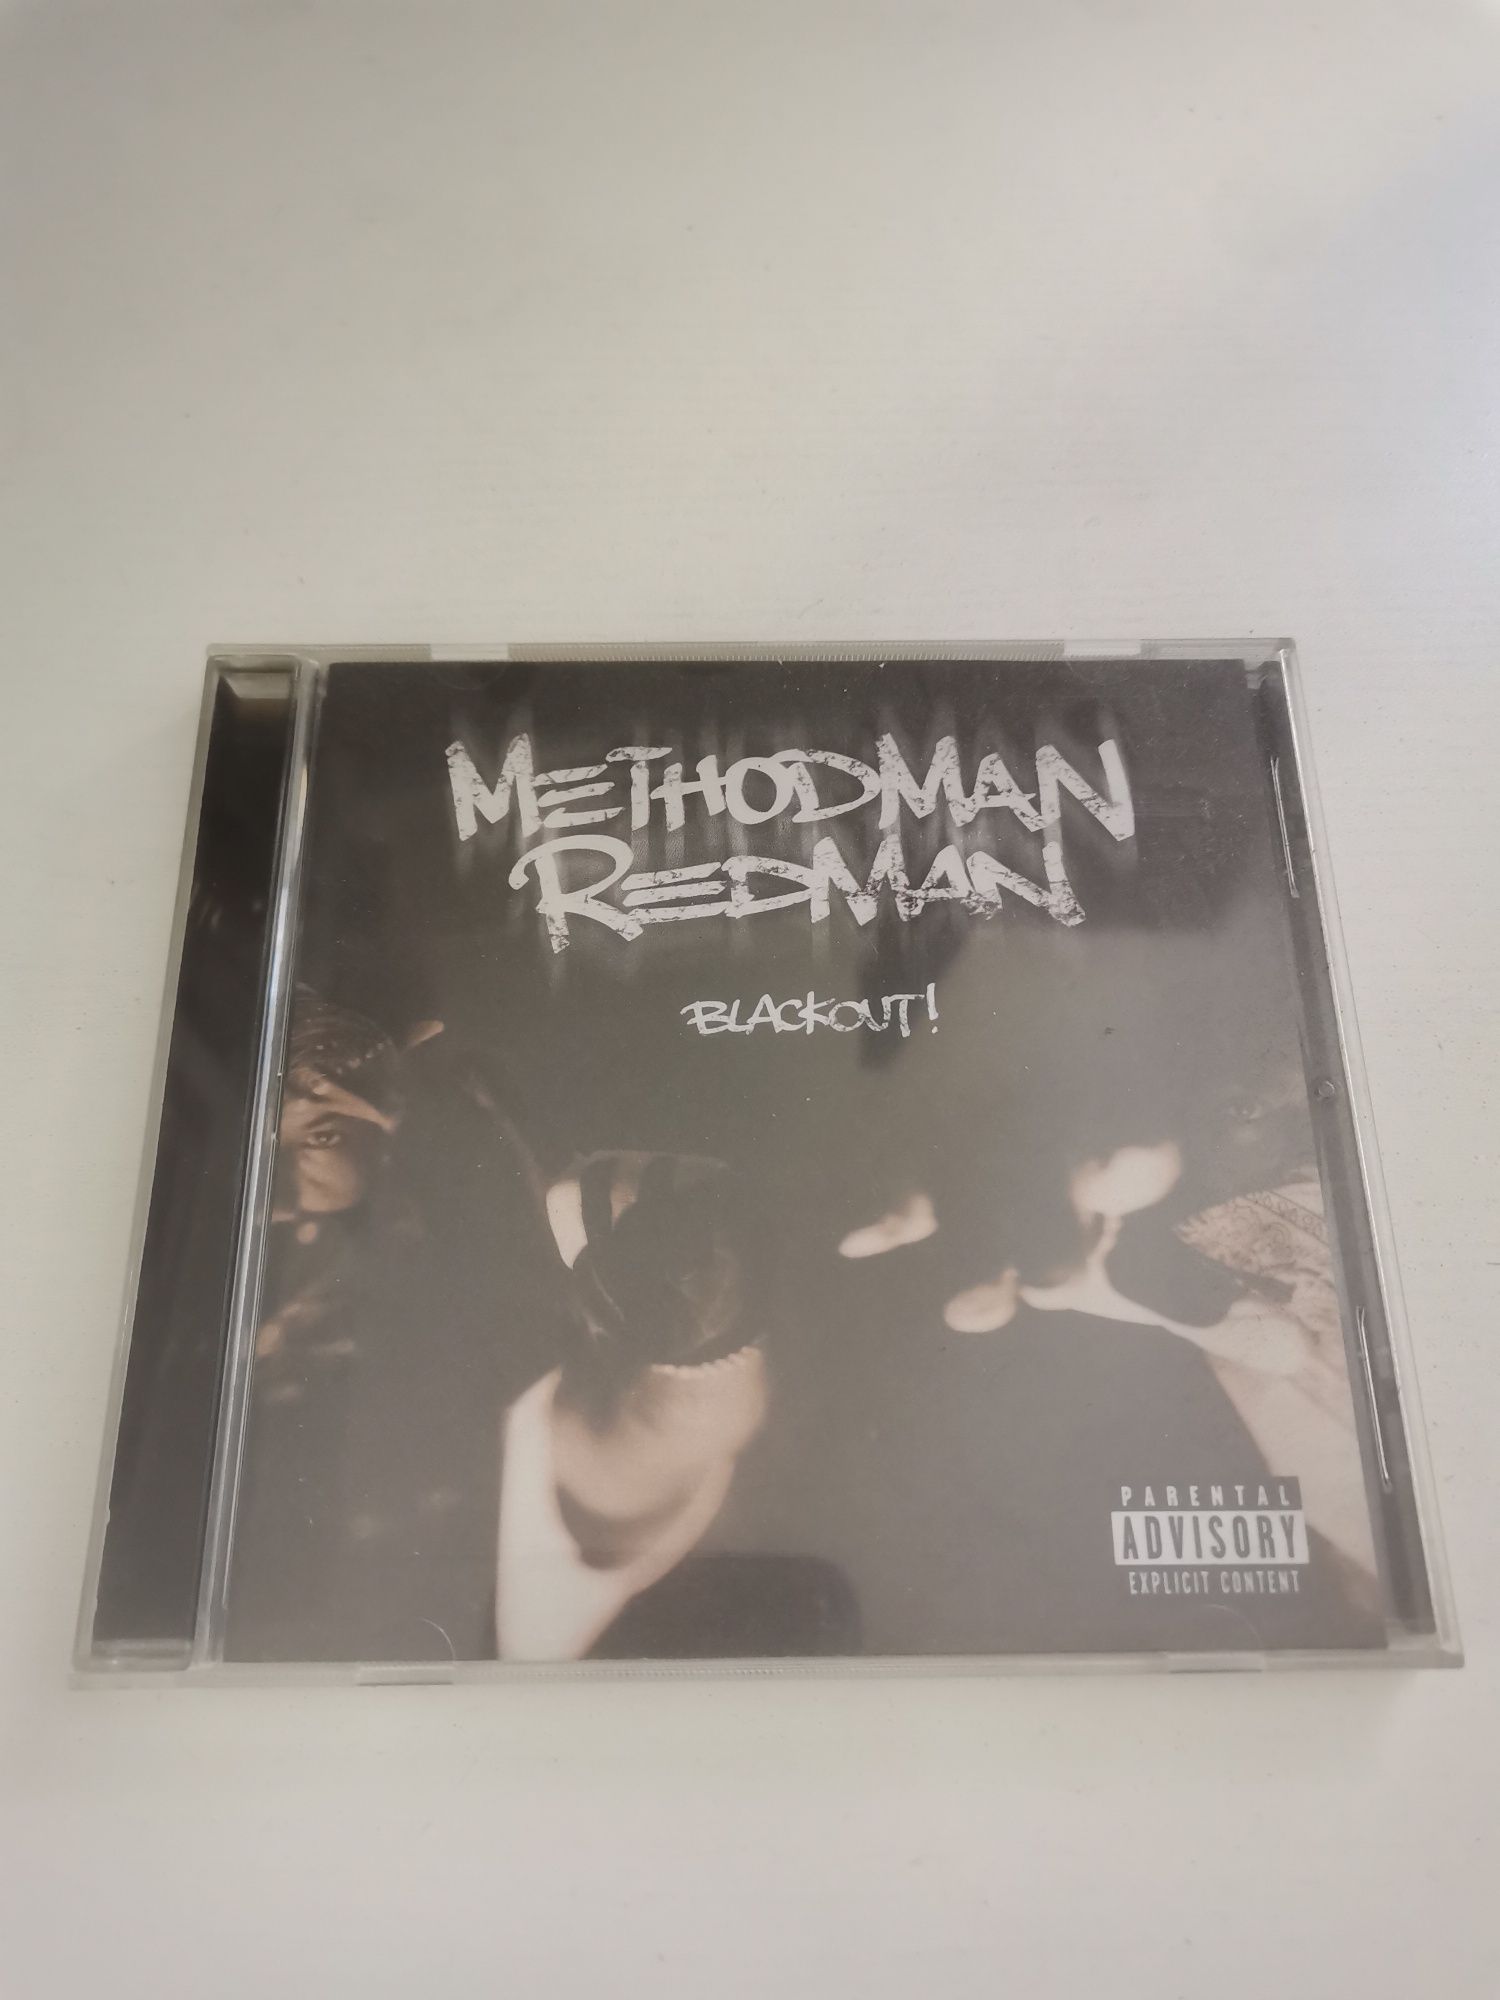 Method man redman - blackout!